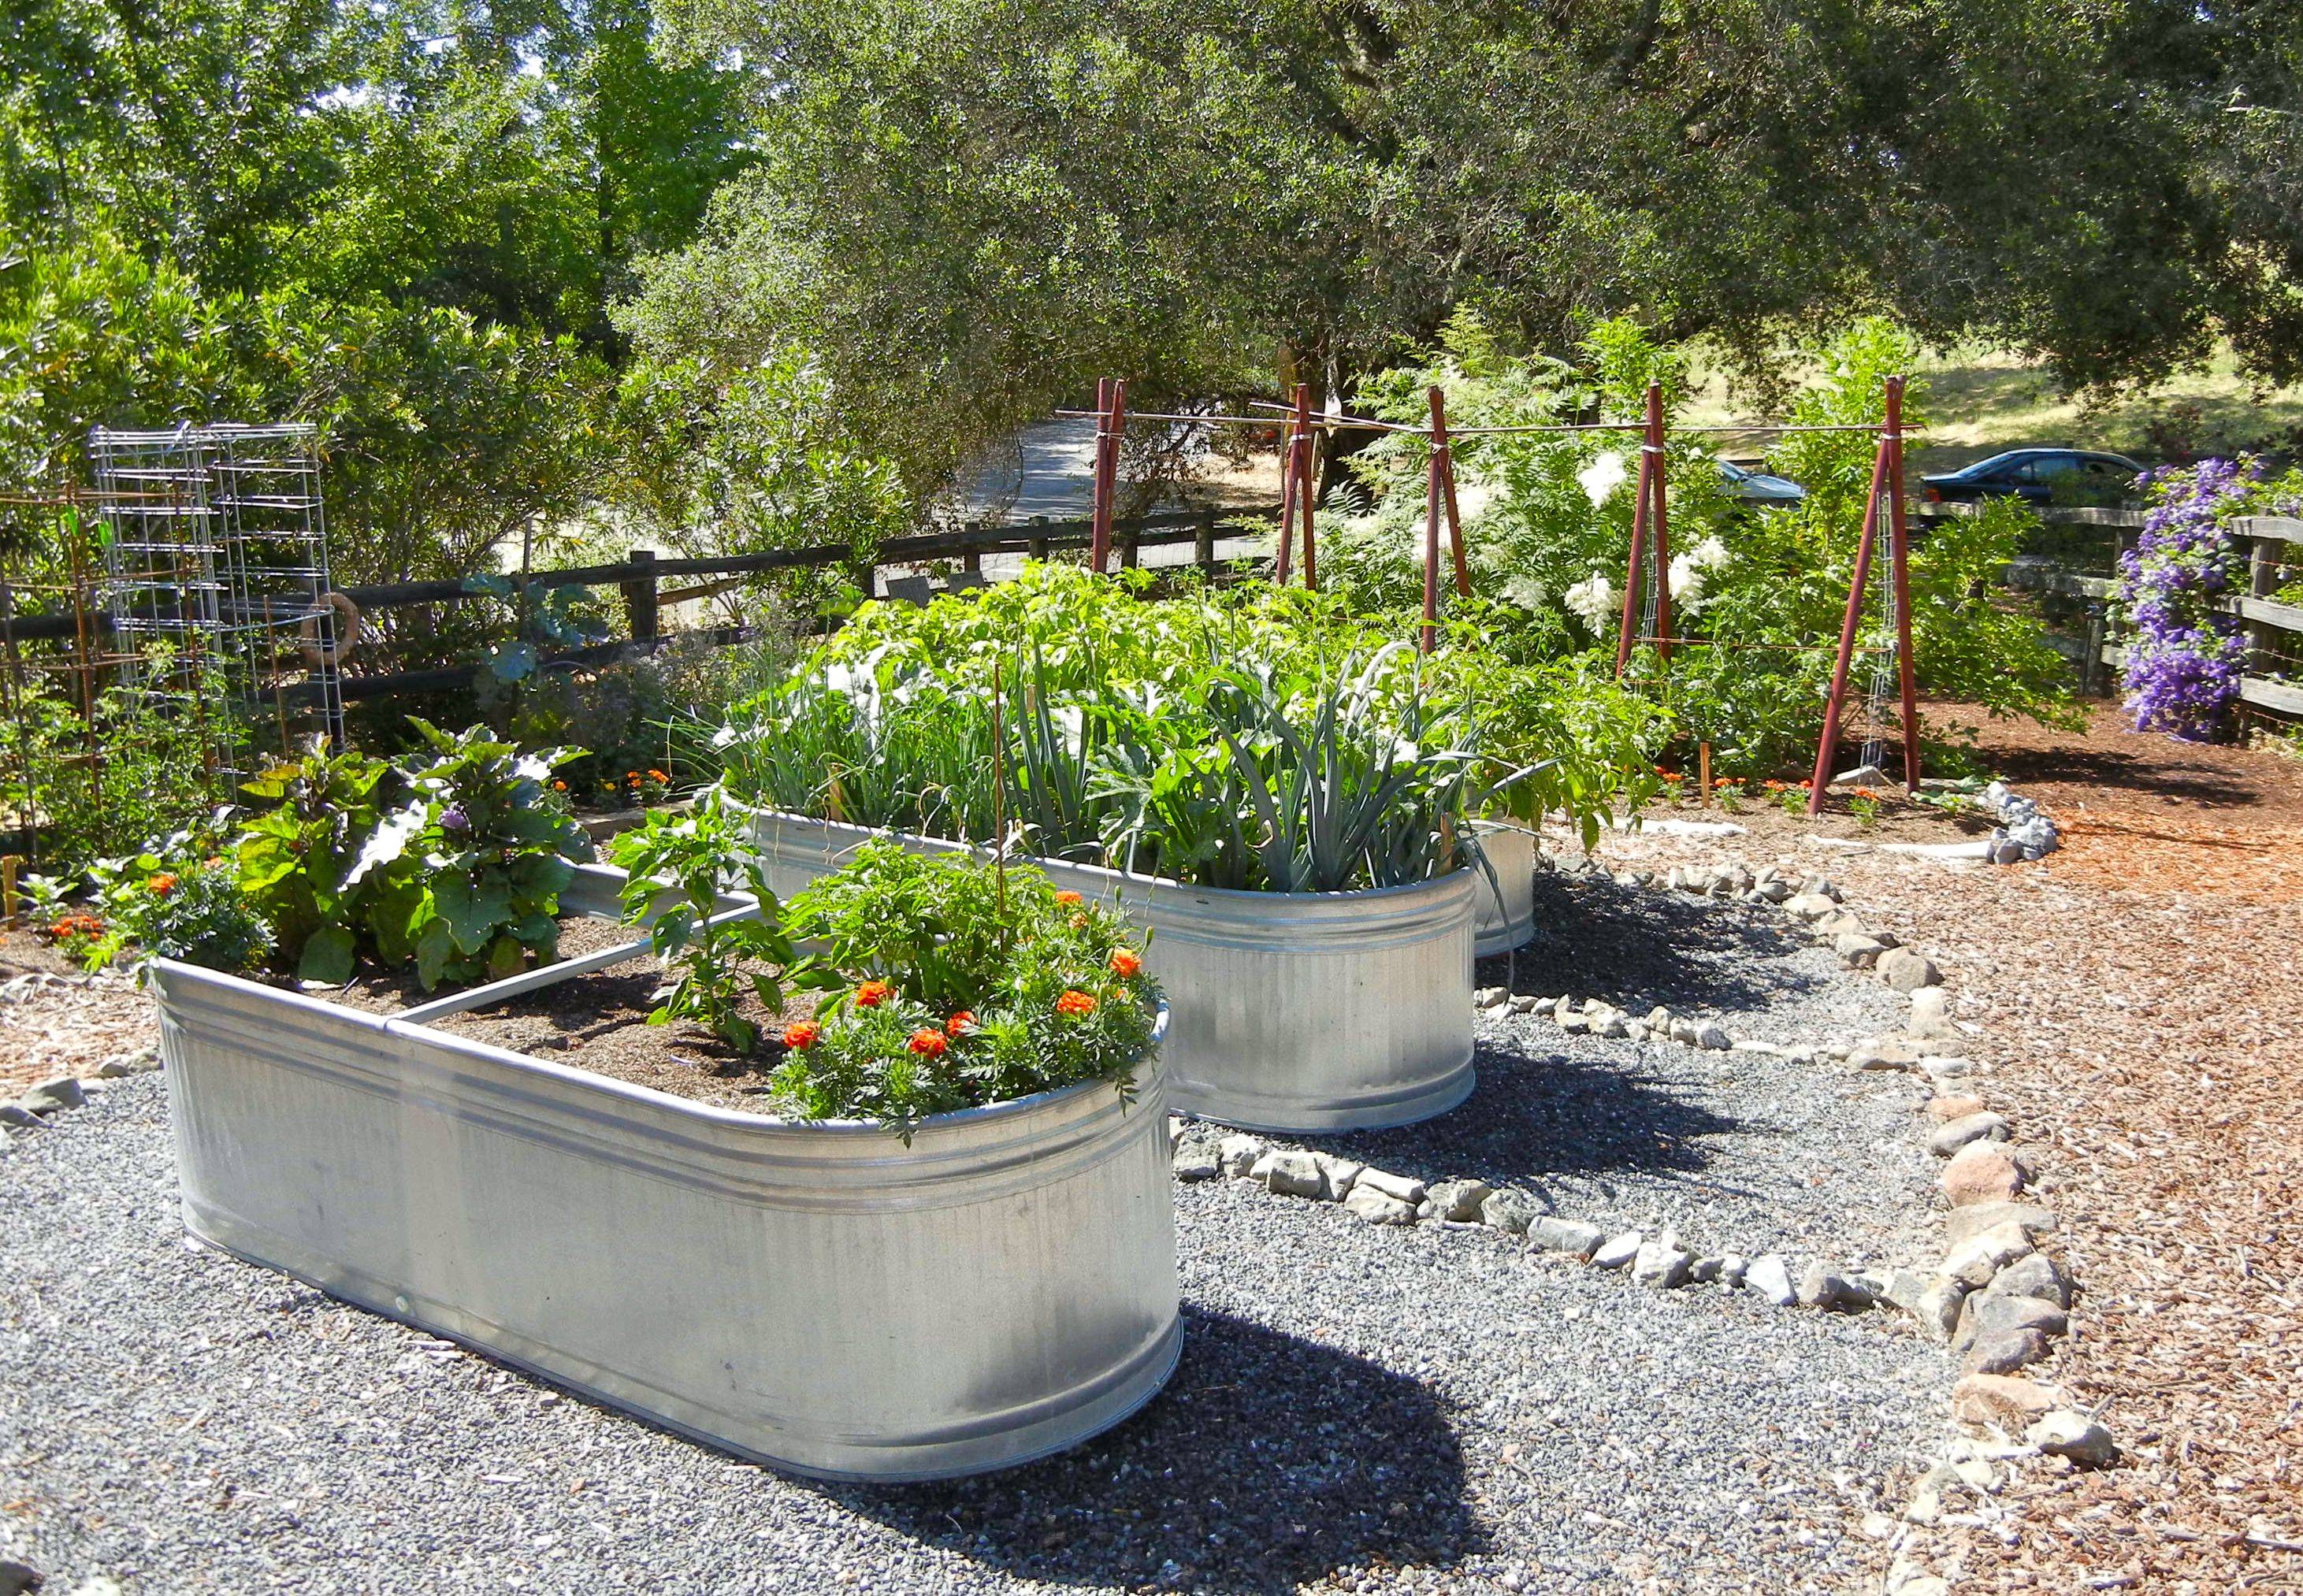 Stunning Container Vegetable Garden Design Ideas